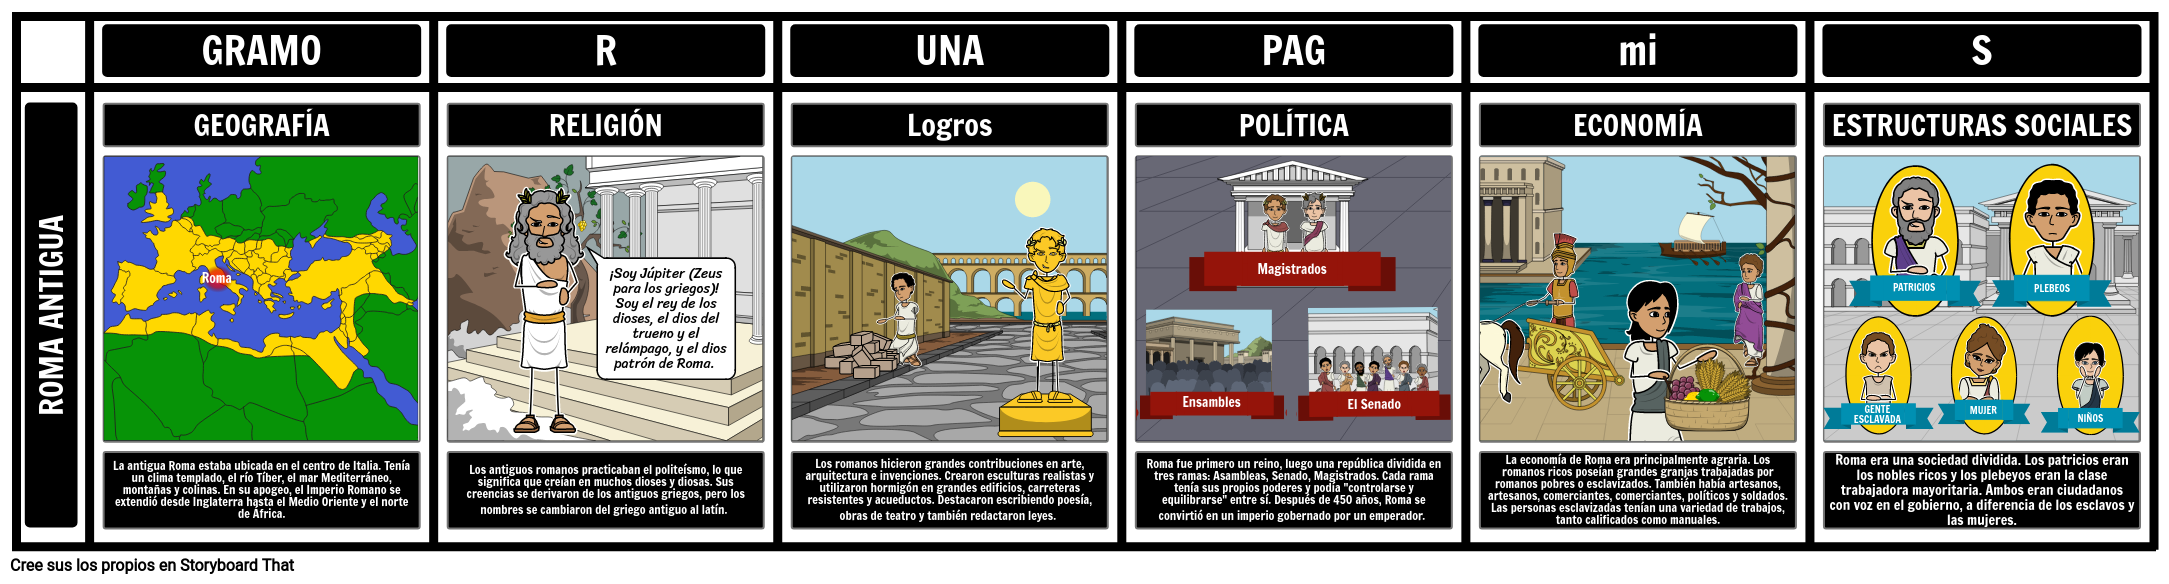 Gráfico De Uvas De La Antigua Roma Storyboard By Es Examples 7672